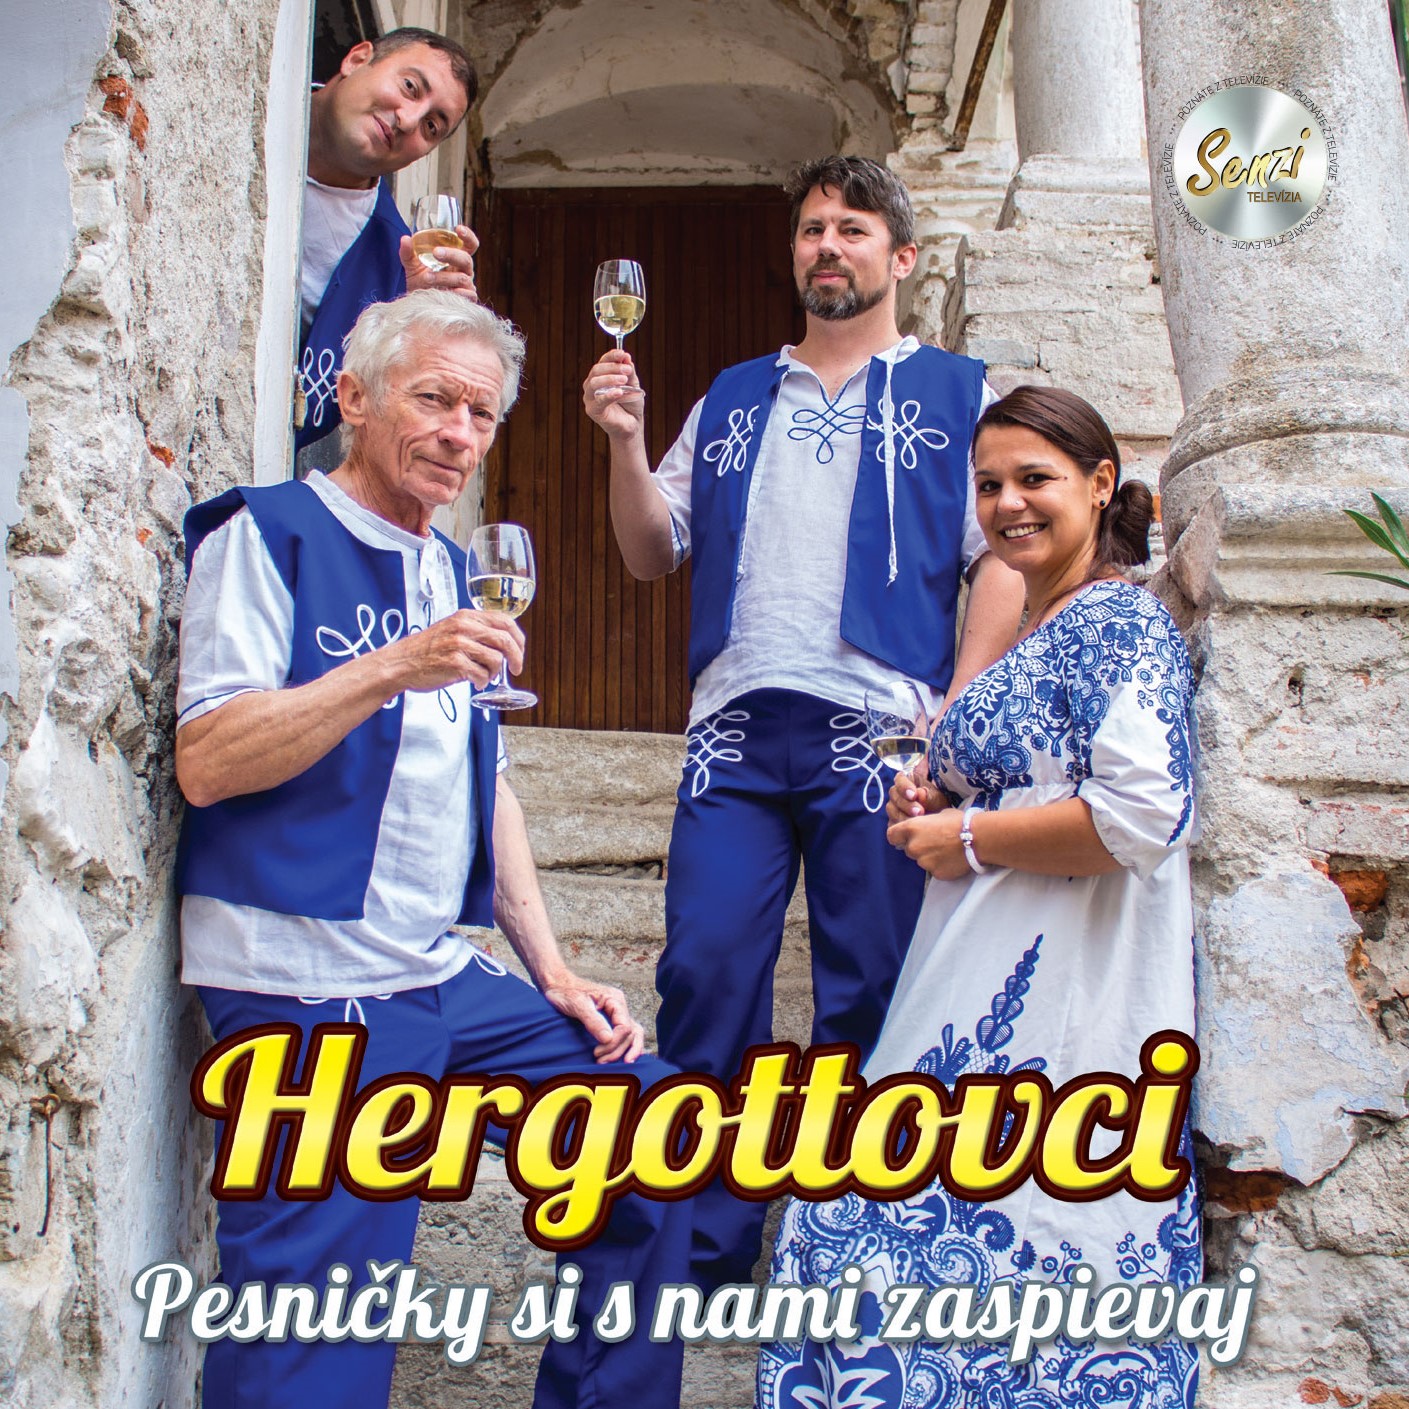 Hergottovci - Pesniky si s nami zaspievaj (cd)